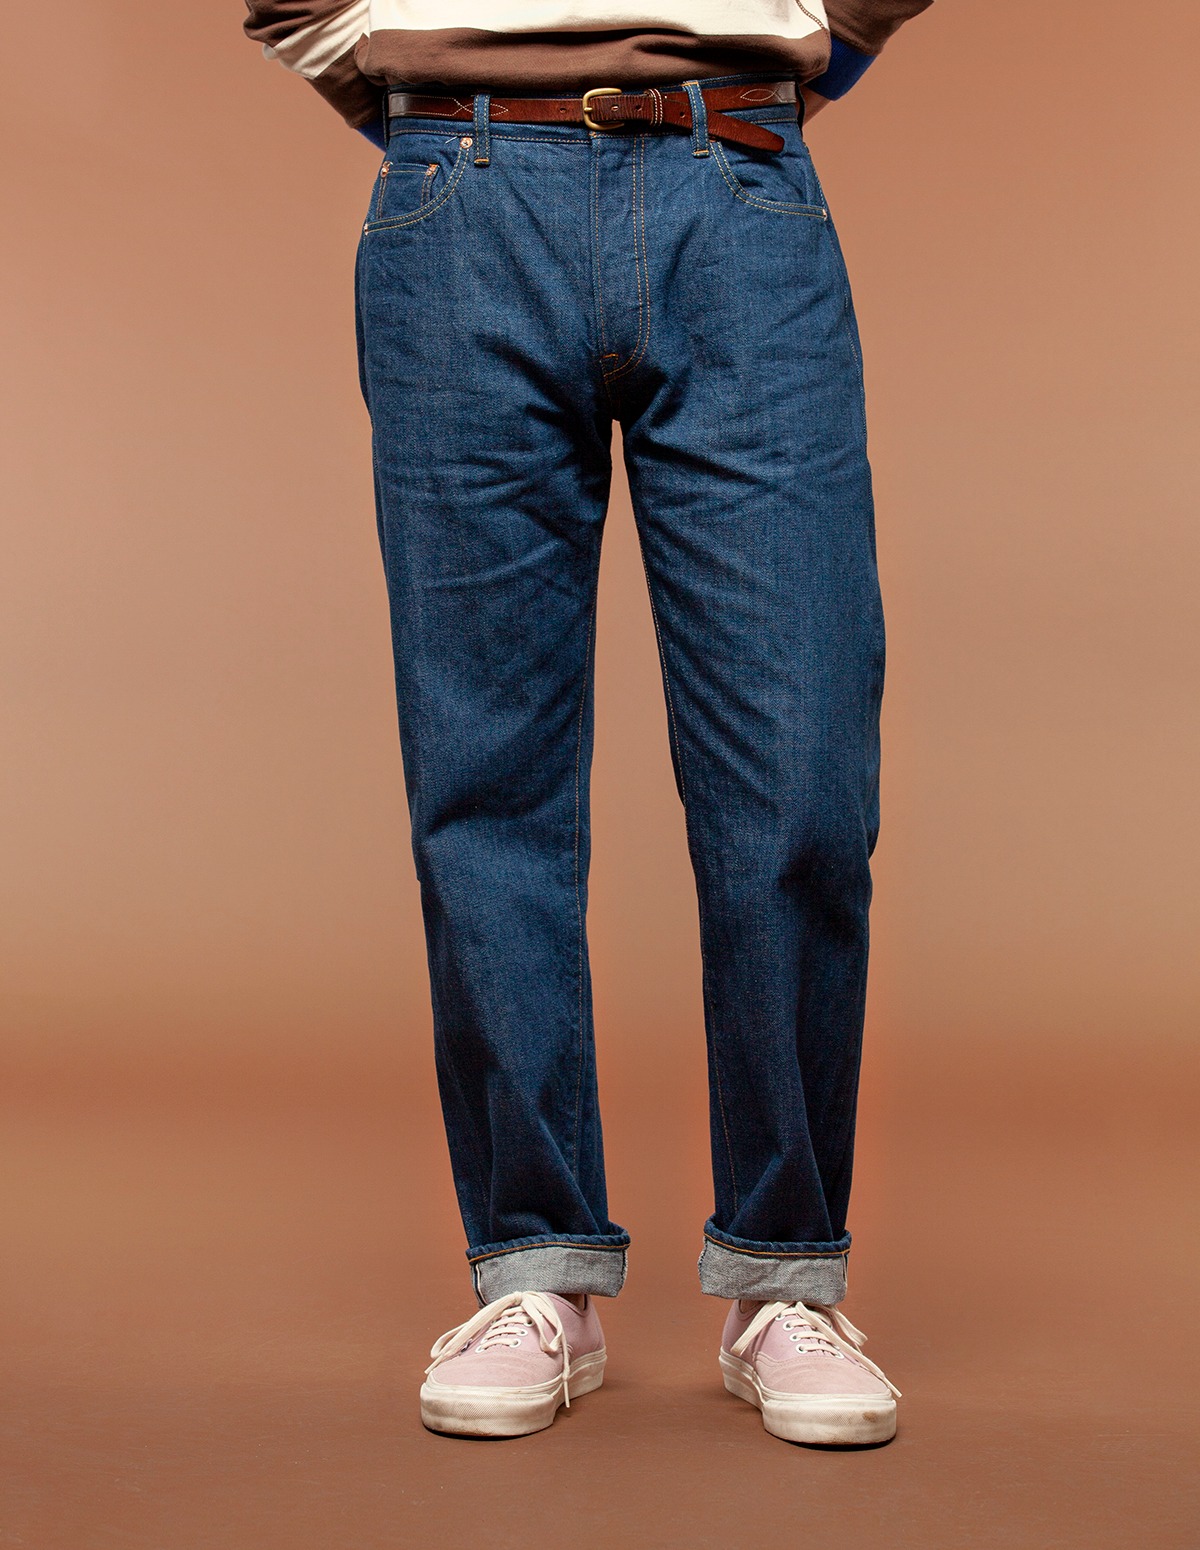 Unipair 164 Jeans